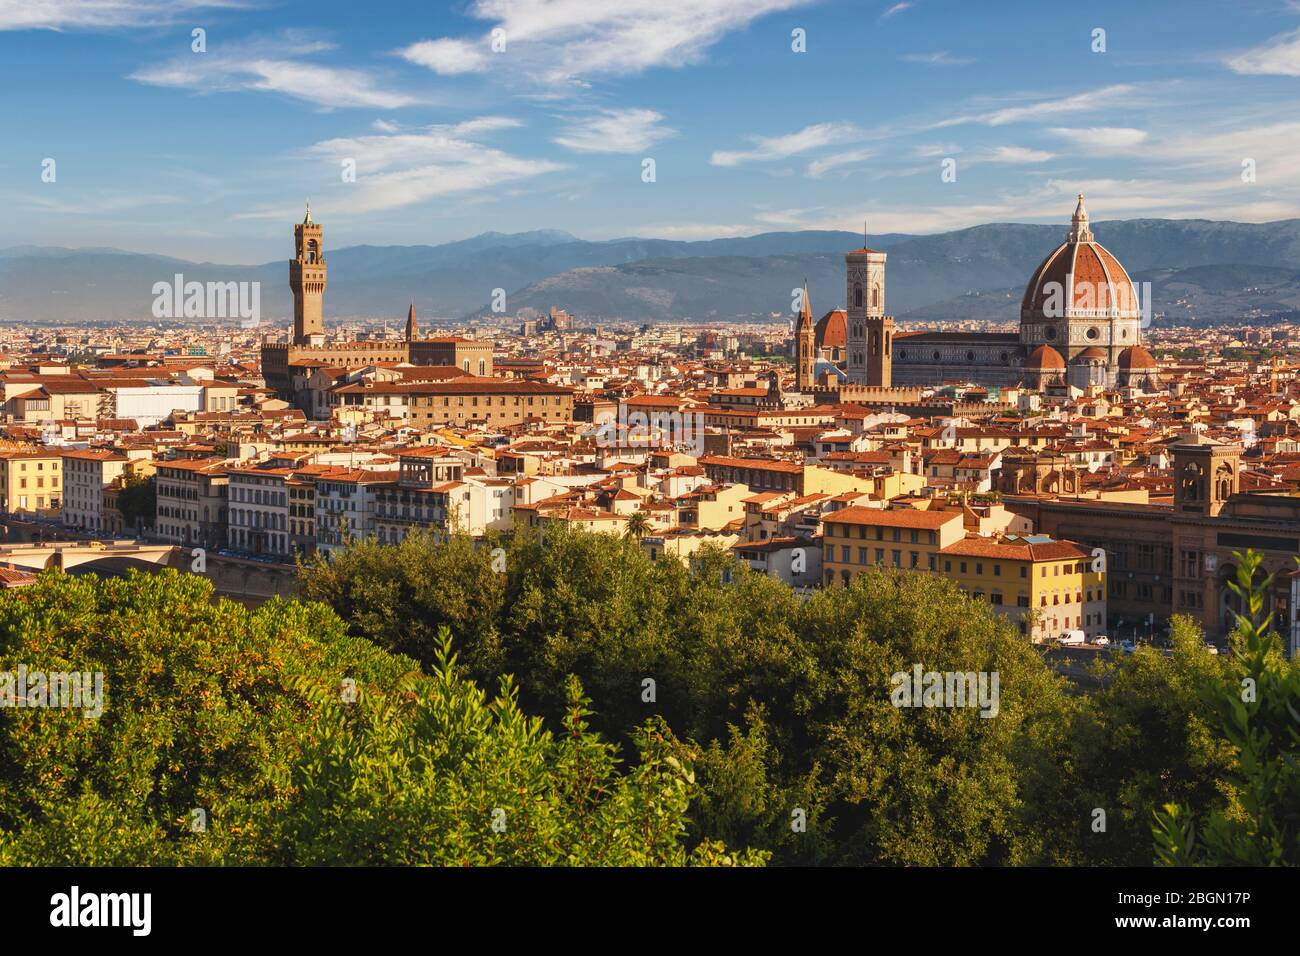 Gesamtblick auf den Dom oder die Kathedrale. Florenz, Toskana, Italien. Das historische Zentrum von Florenz ist ein UNESCO-Weltkulturerbe Stockfoto